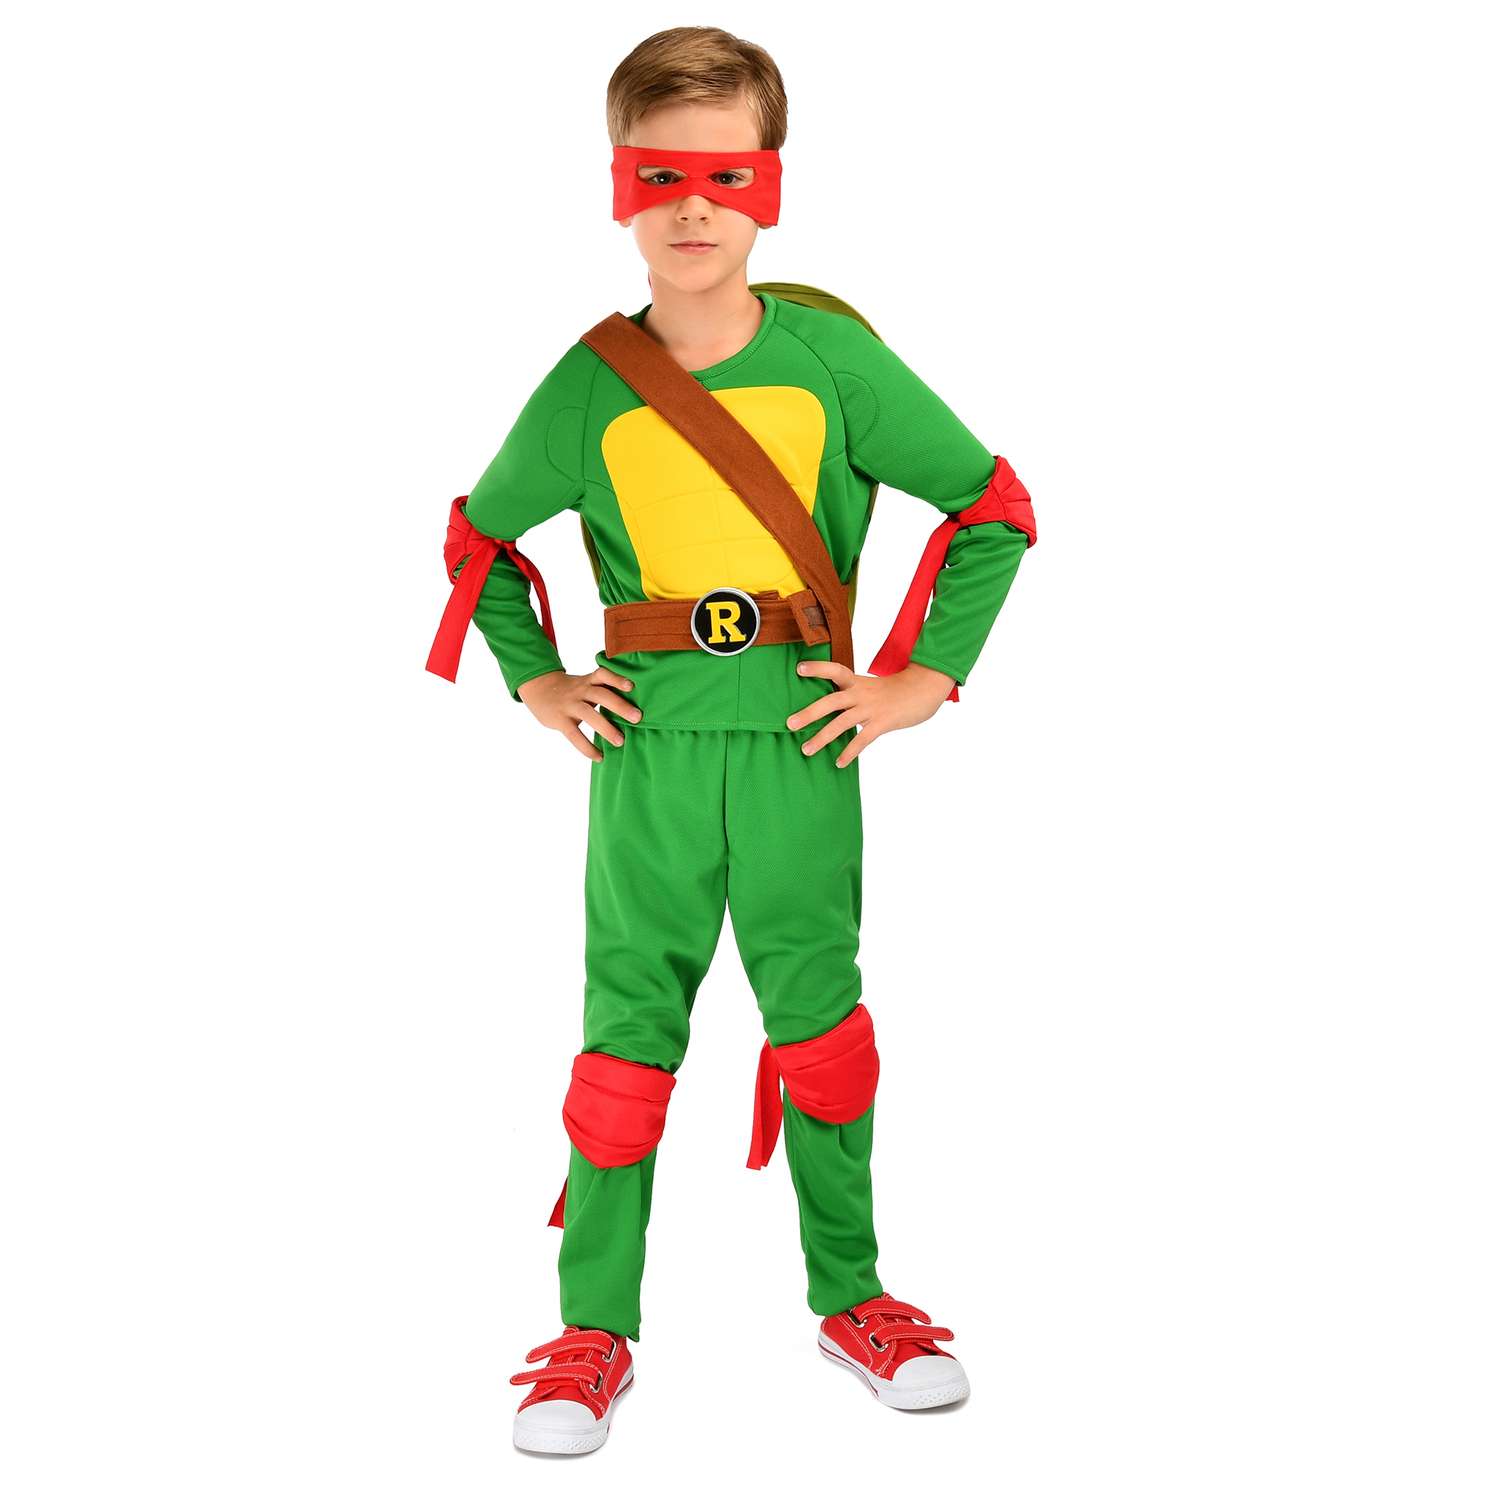 Костюм карнавальный Ninja Turtles(Черепашки Ниндзя) Рафаэль 3-5лет 92-110 55002-XS 55002-XS - фото 1